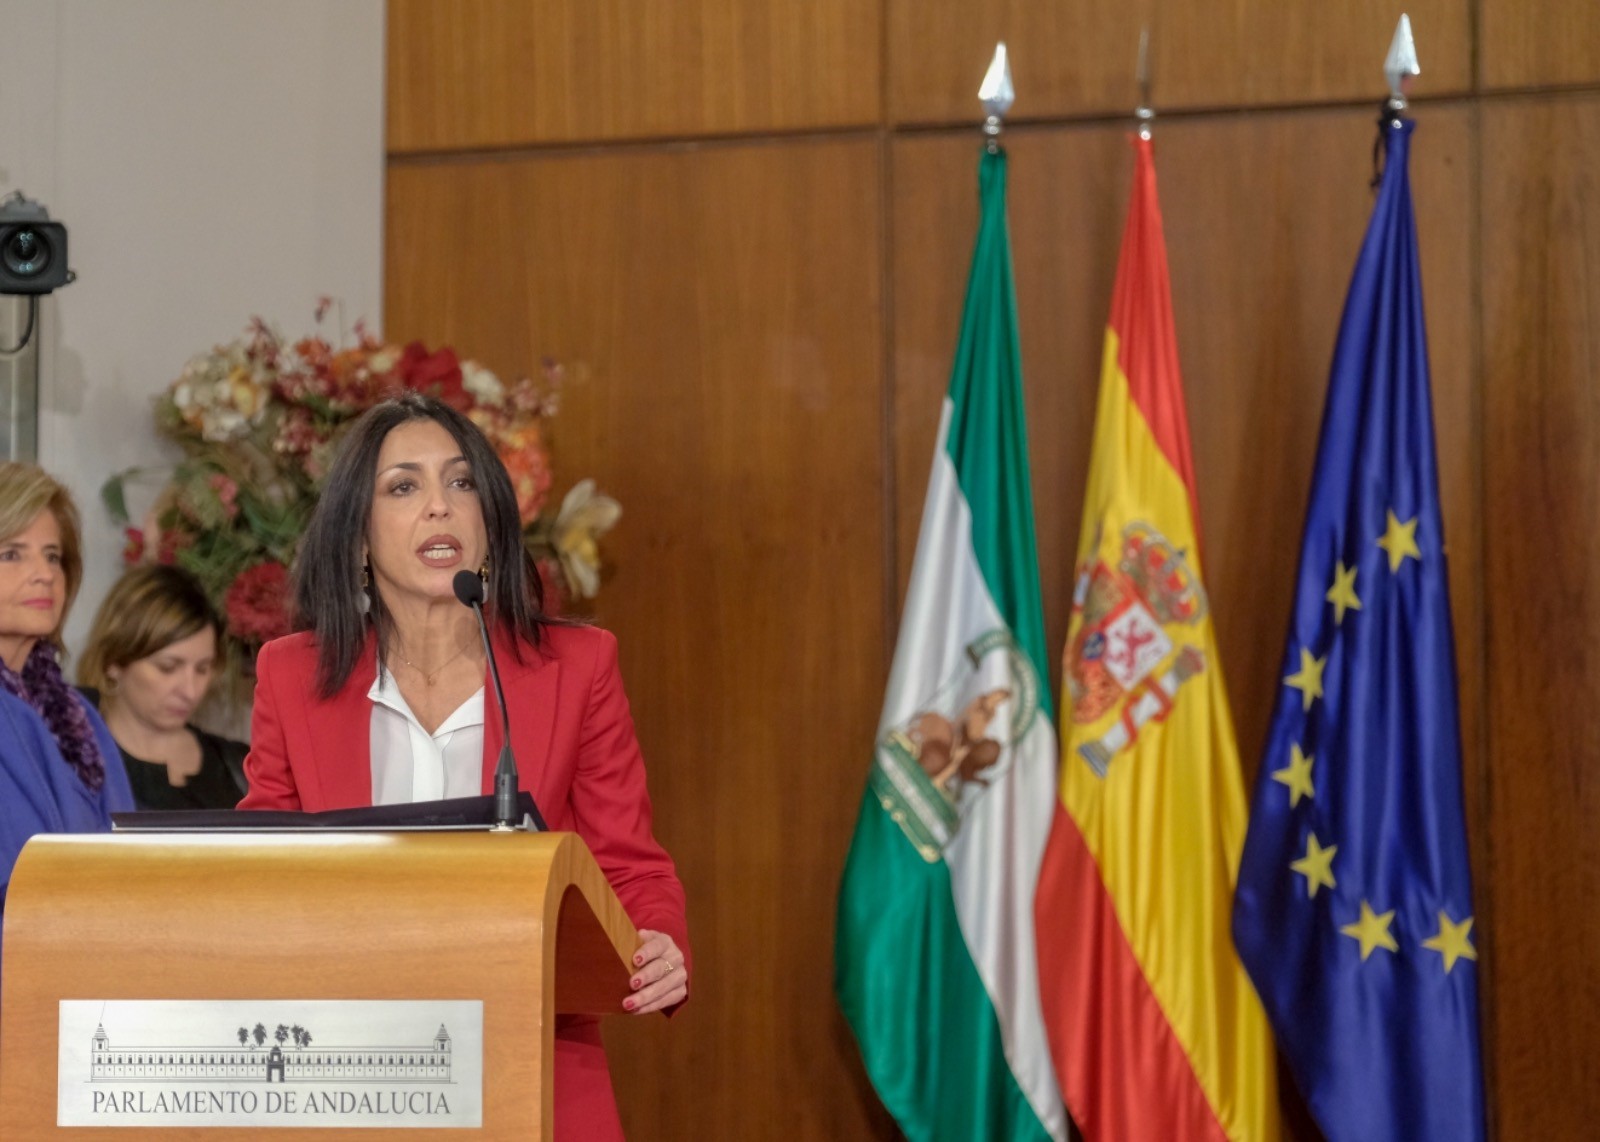  La presidenta del Parlamento, Marta Bosquet, interviene en el acto de toma de posesin de Juan Manuel Moreno como presidente de la Junta de Andaluca